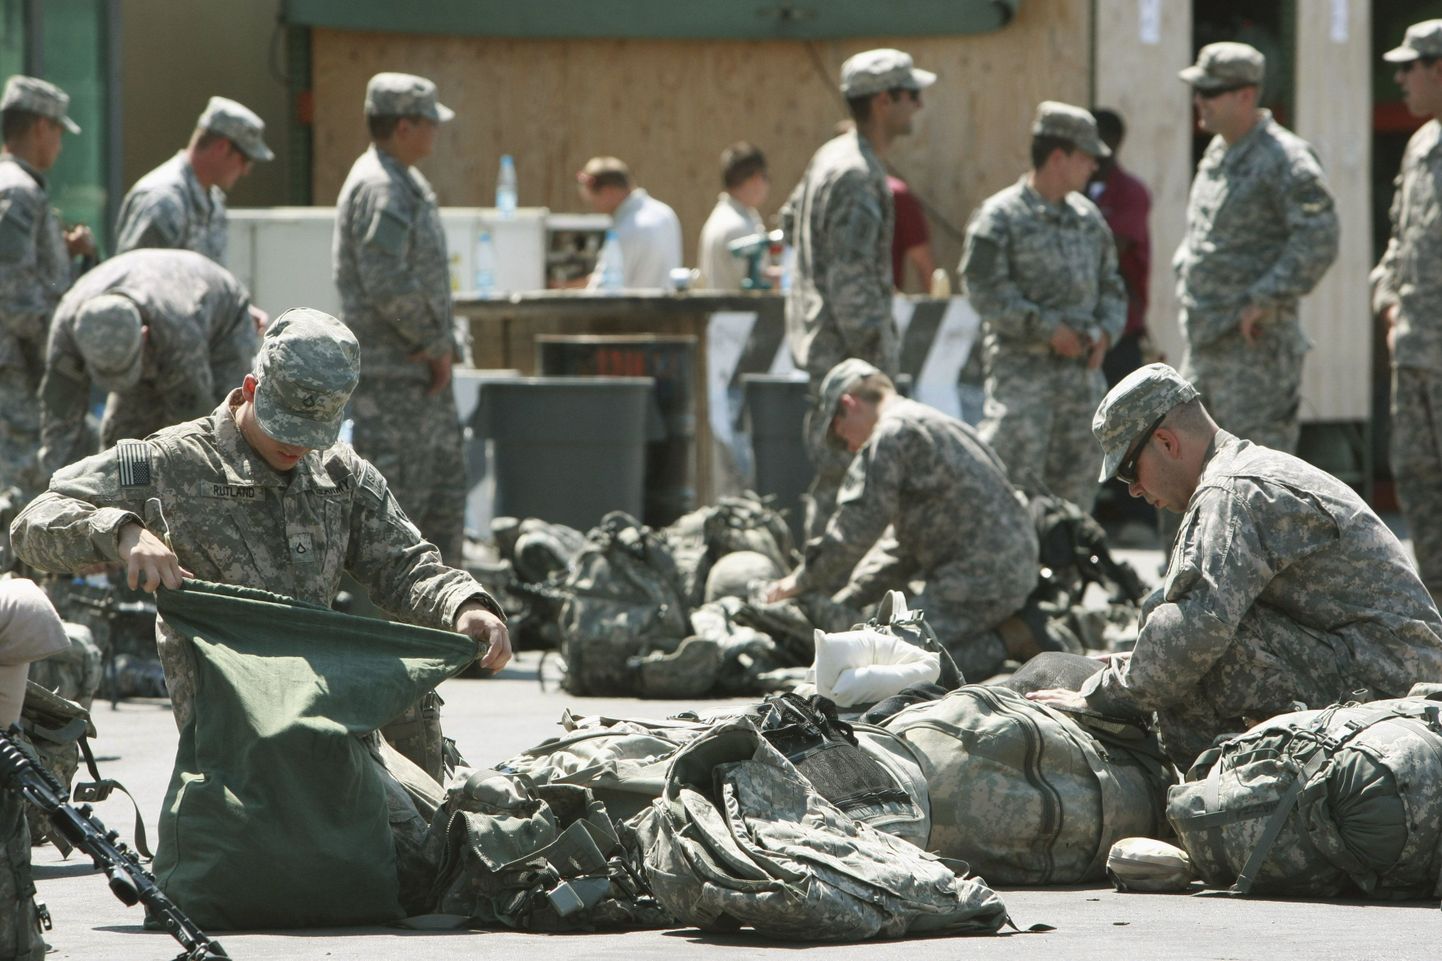 Ameerika sõdurid Kõrgõztani baasis valmistumas minema lennukile, mis toimetab nad Afganistani.